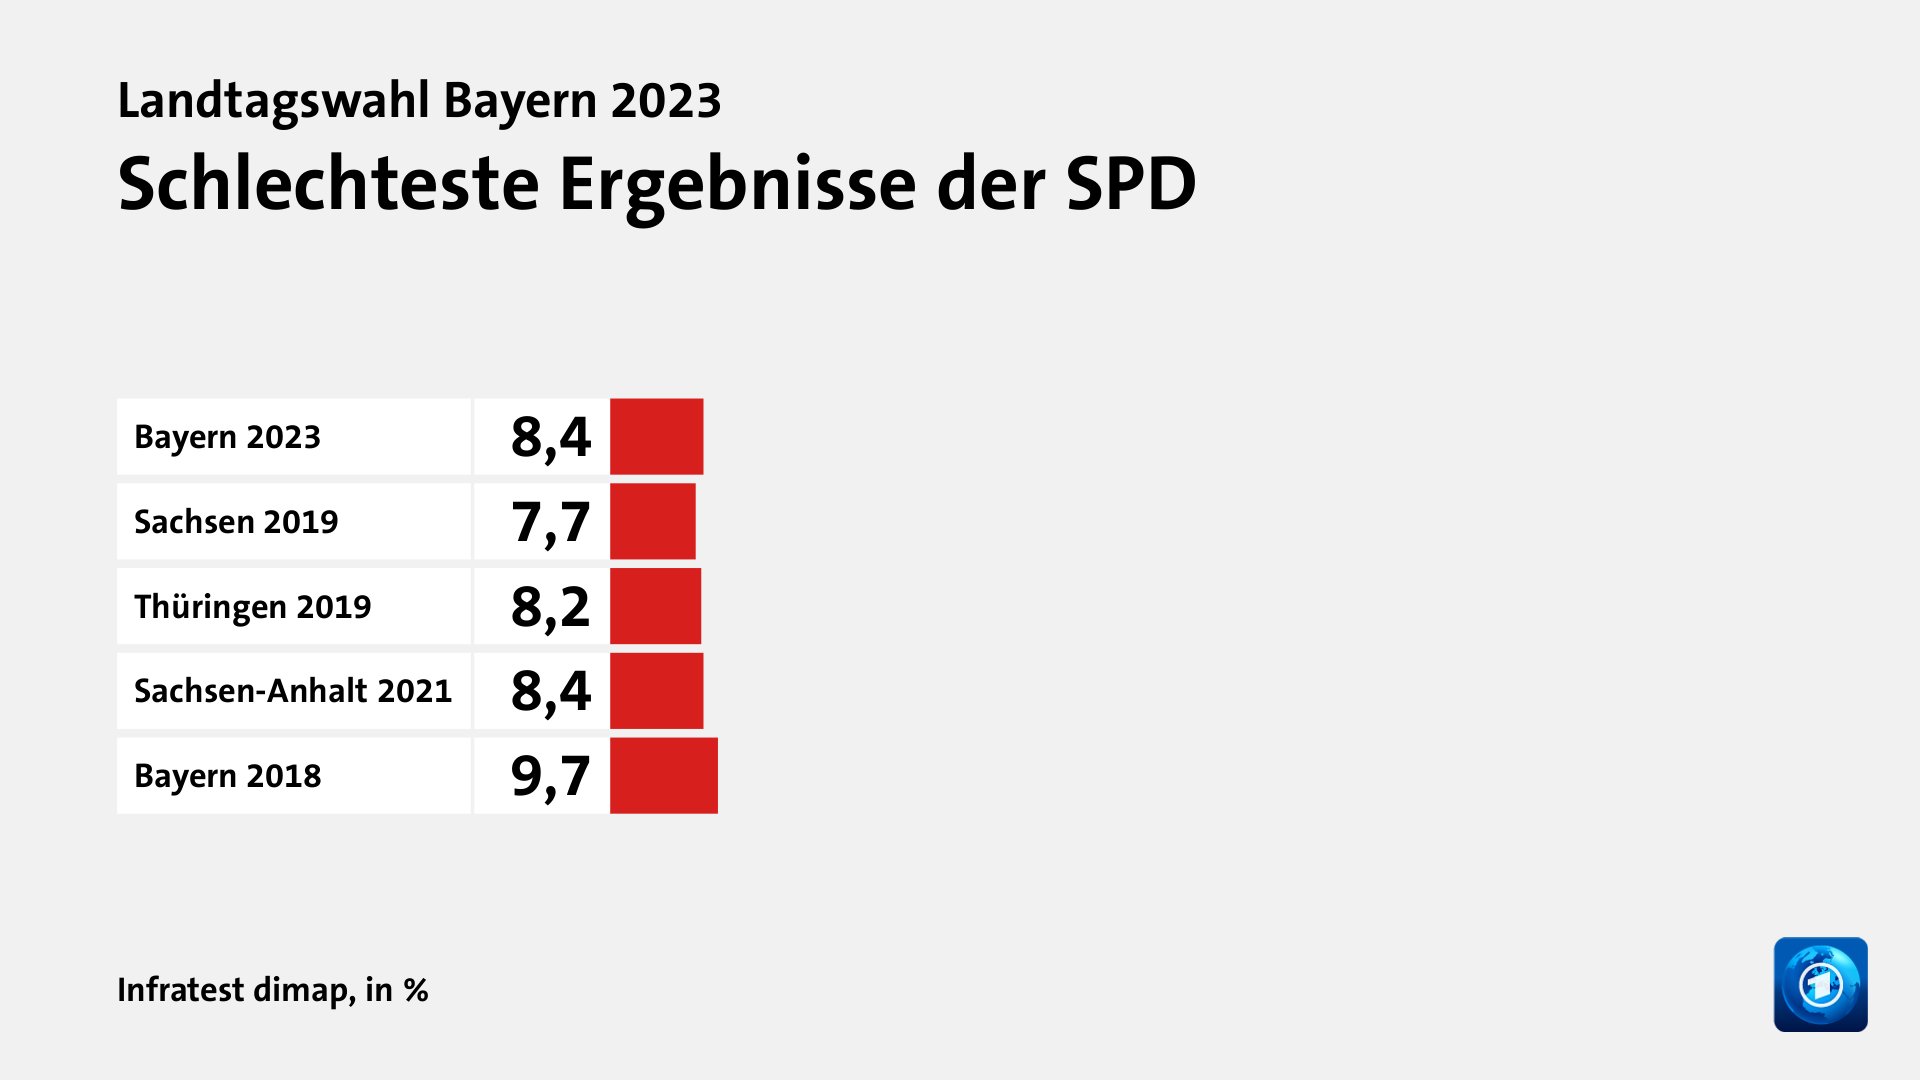 Schlechteste Ergebnisse der SPD, in %: Bayern 2023 8, Sachsen 2019 7, Thüringen 2019 8, Sachsen-Anhalt 2021 8, Bayern 2018 9, Quelle: Infratest dimap